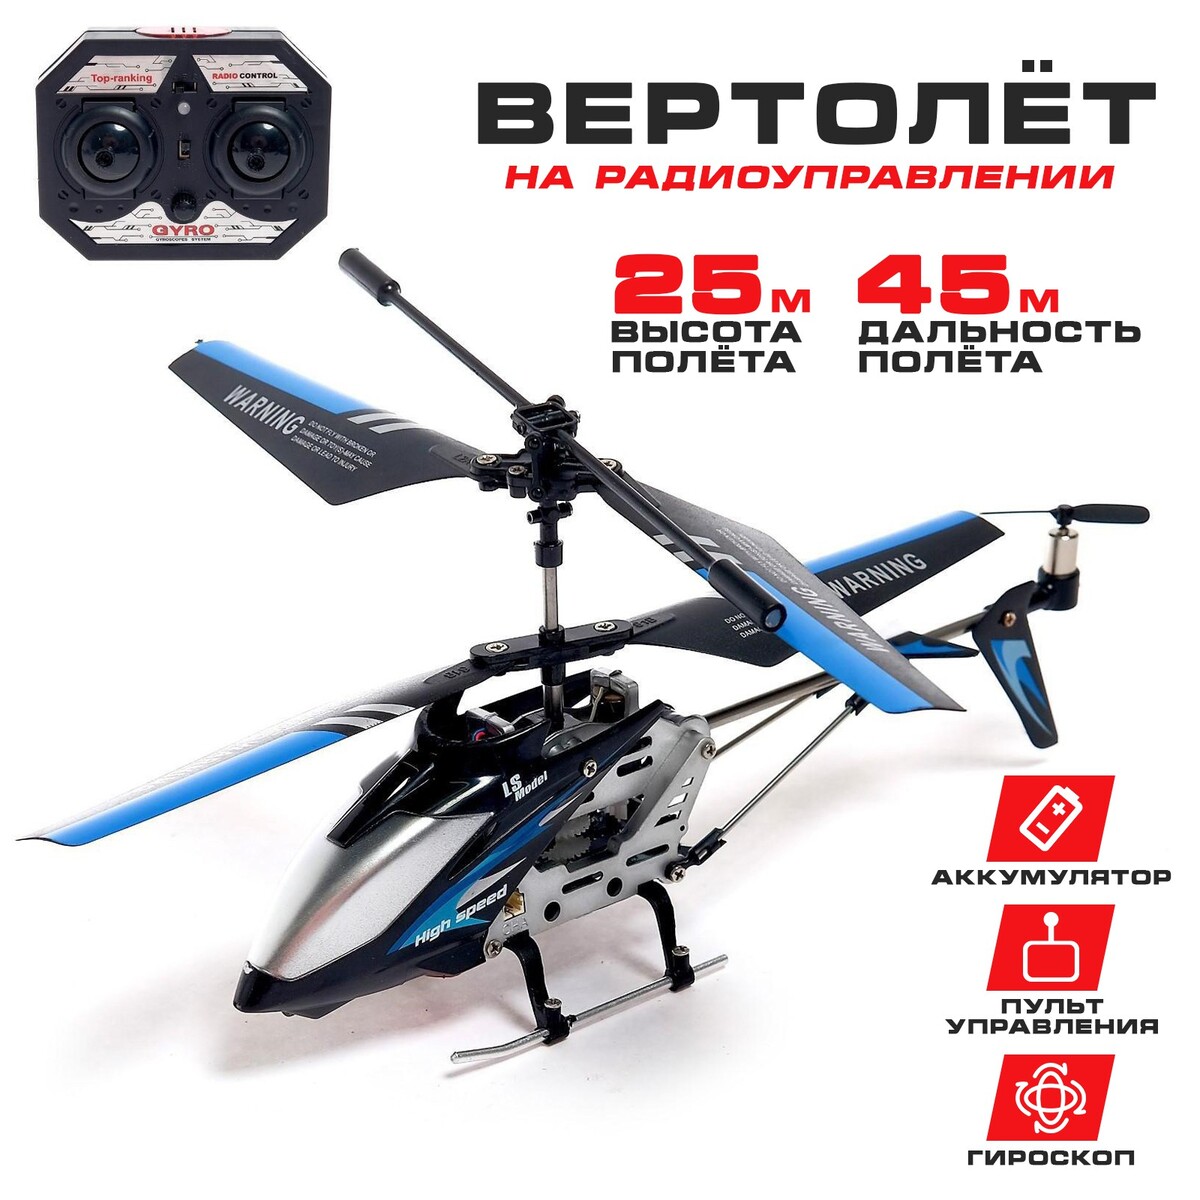 Вертолет радиоуправляемый sky, с гироскопом, цвет черный радиоуправляемый мотоцикл с гироскопом 2 4g yongxiang toys 8897 204 blue